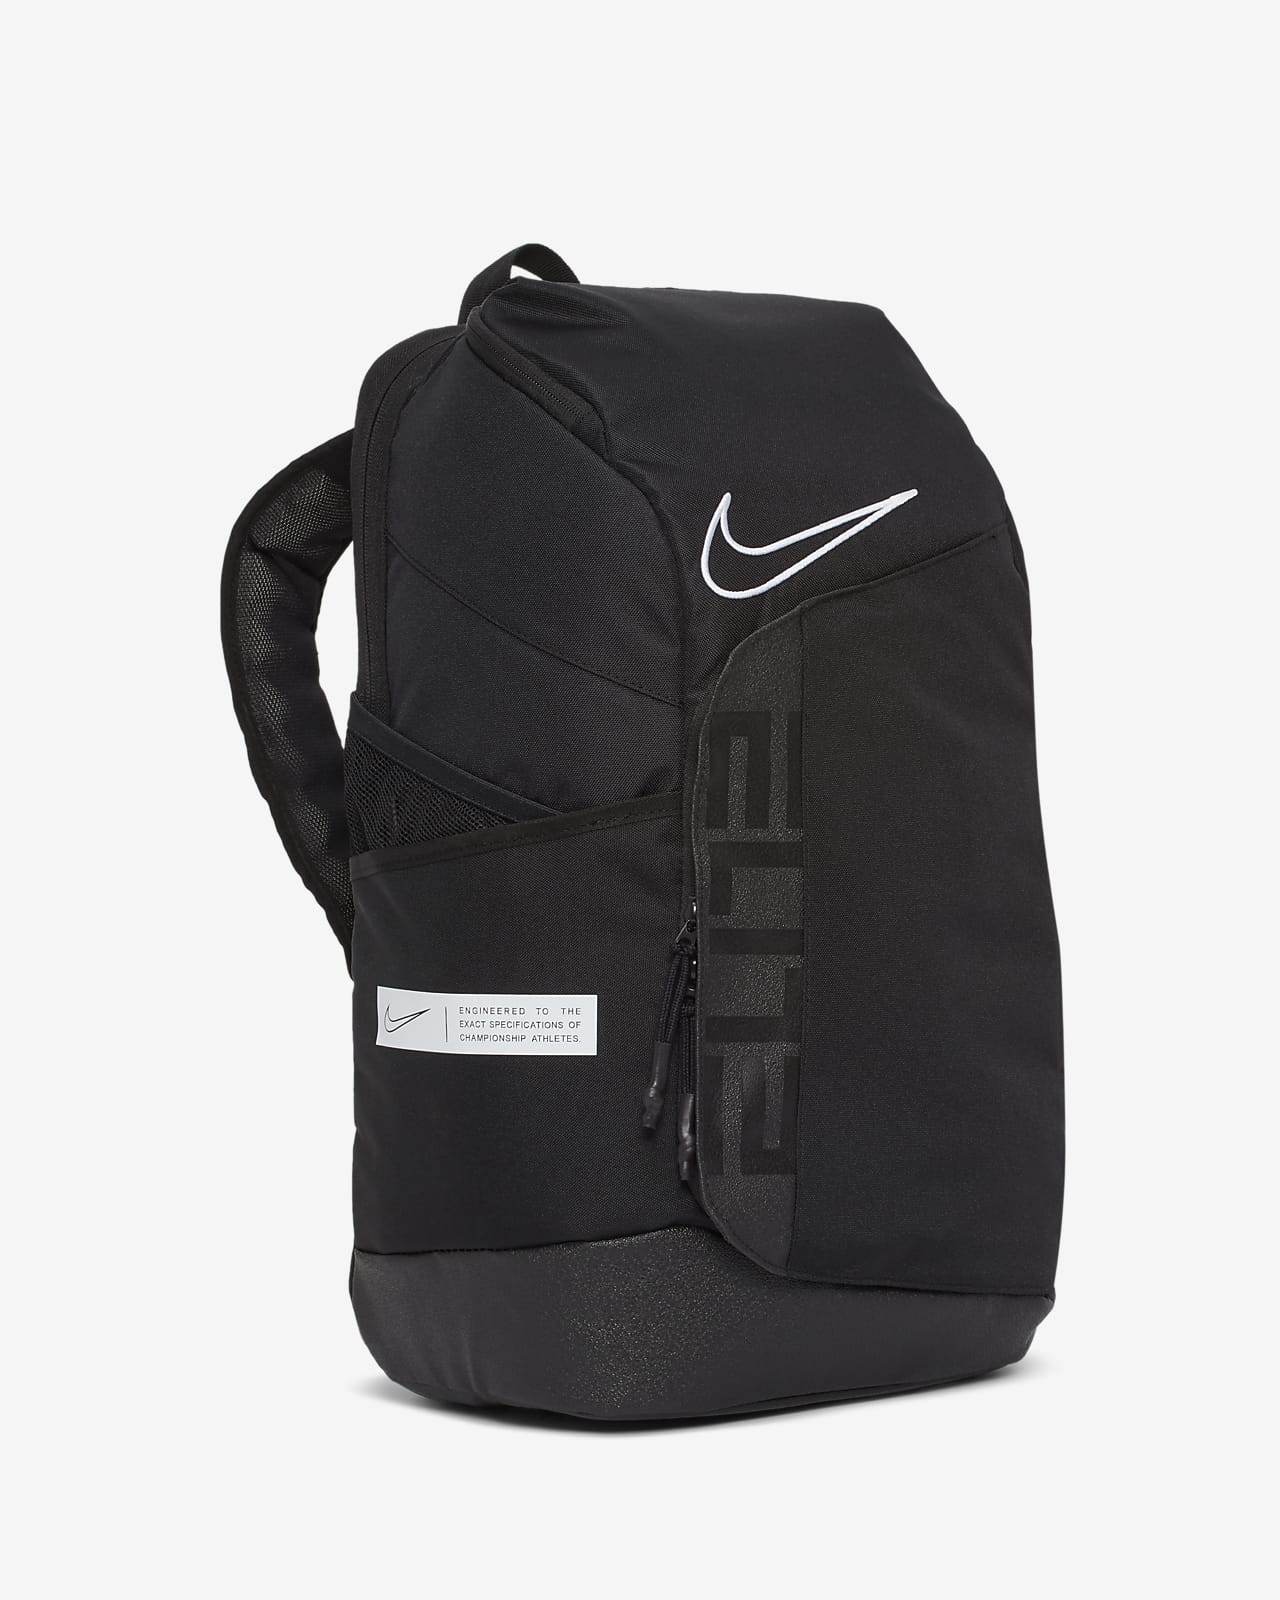 elite backpack nike